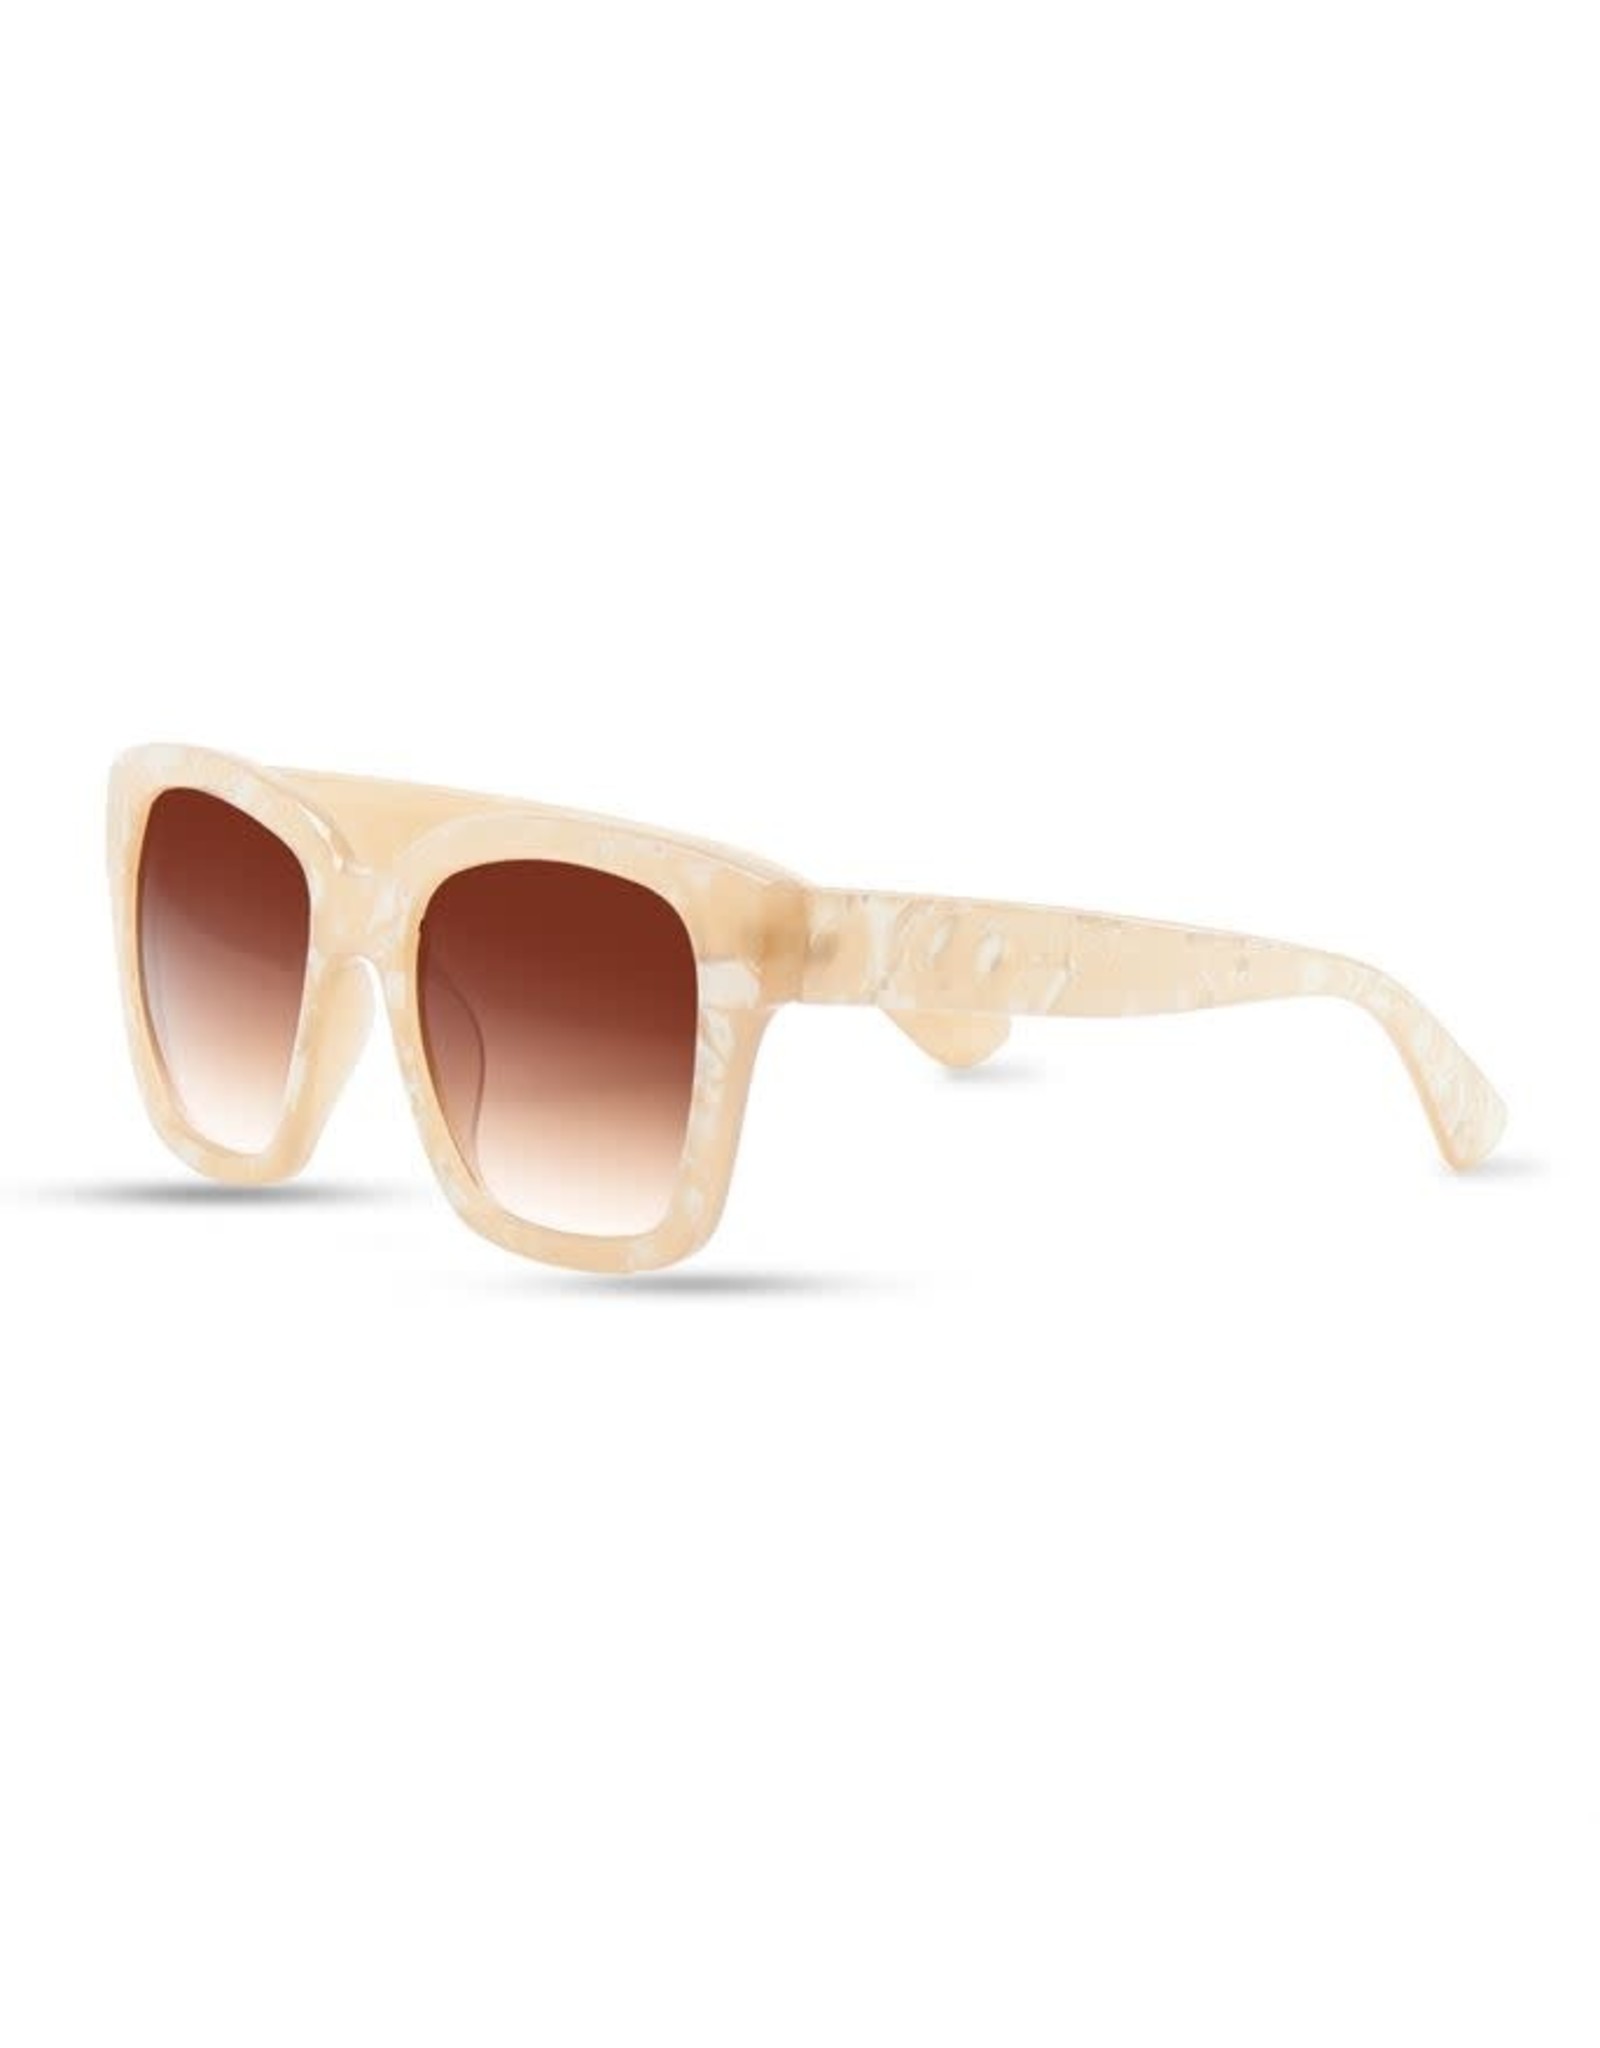 Aubrey Lynn Pearlized Sunglasses